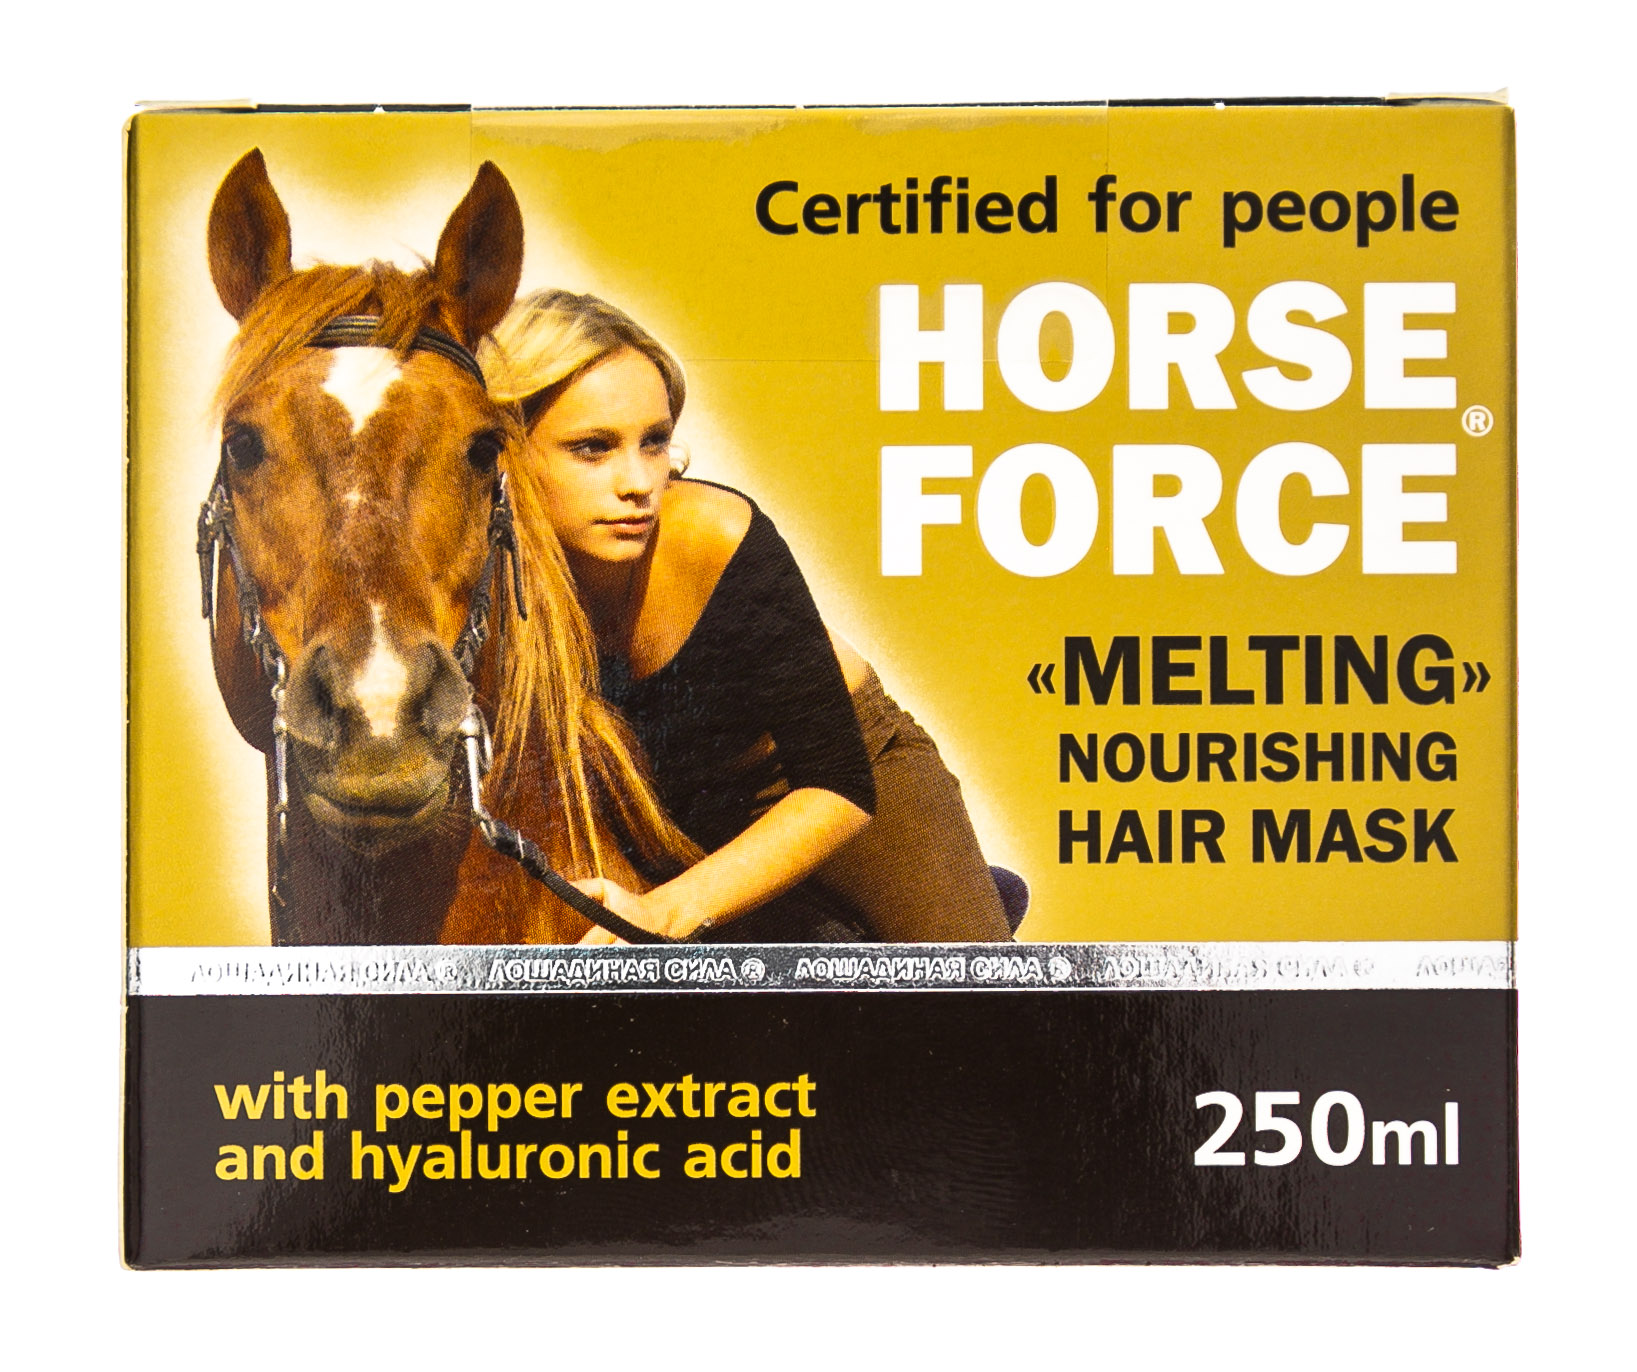 Лошадиная сила маски для волос стоимость